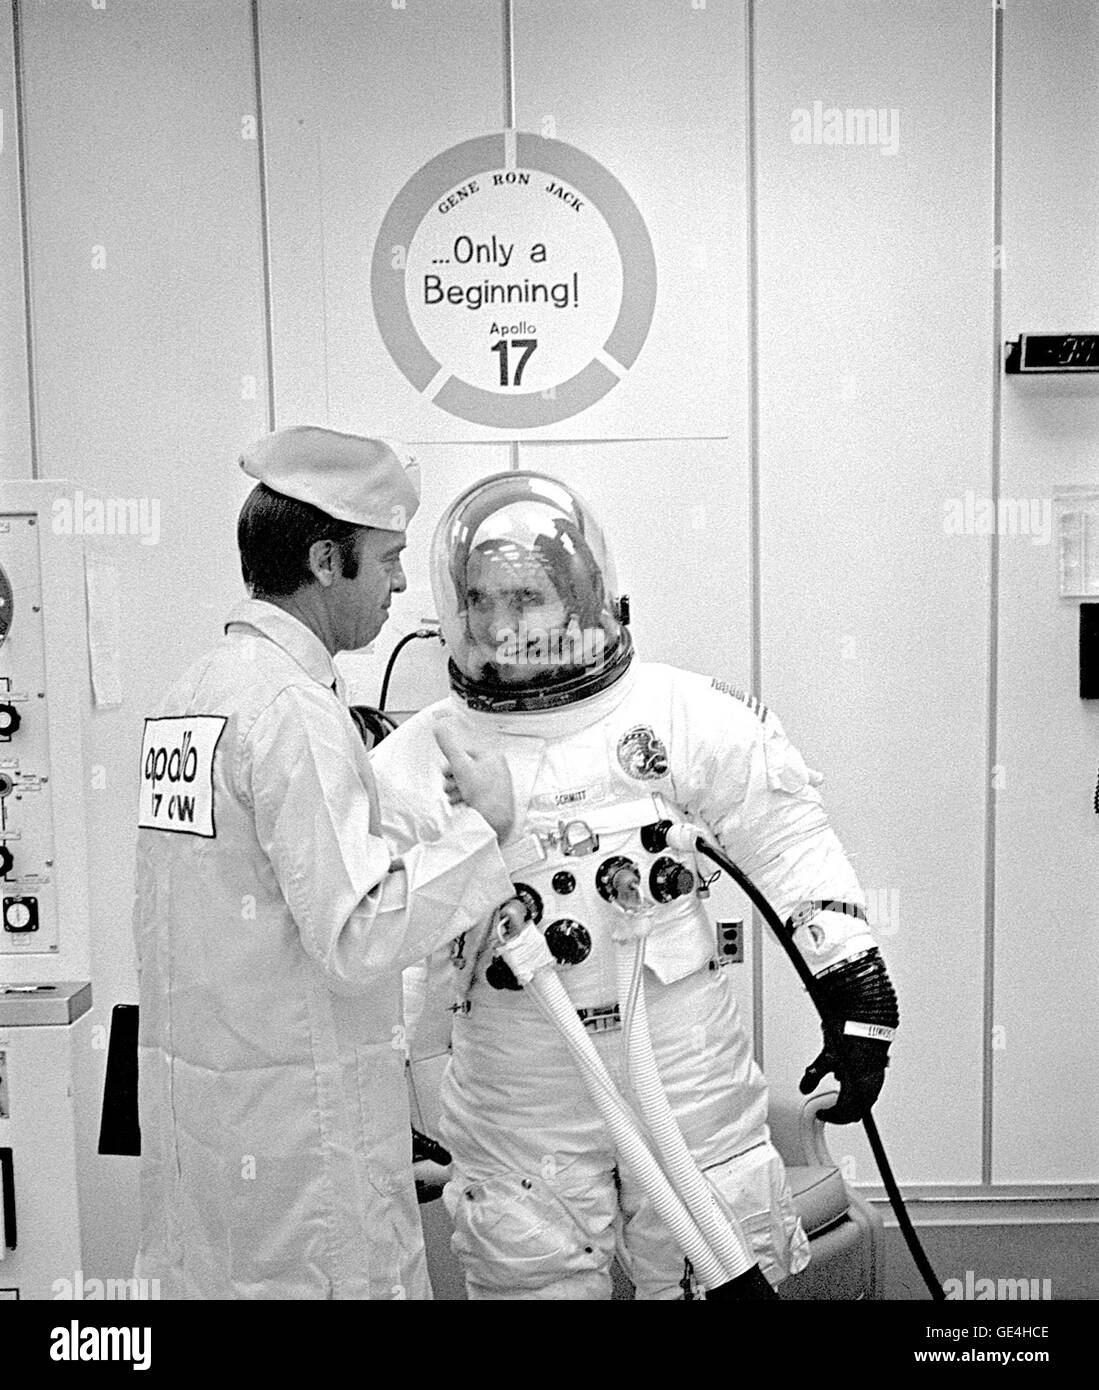 (6 dicembre 1972) l'Apollo 17 Modulo Lunare Pilot Harrison H. Schmitt condivide un momento di relax con l'astronauta Alan Shepard prelaunch durante le operazioni di adattamento. Schmitt potranno esplorare la luna di Taurus-Littrow regione con il comandante della missione Eugene A. Cernan durante la NASA il sesto e ultimo presidiato di atterraggio lunare di missione. Il terzo crewman, Ronald E. Evans, sarà pilota il modulo di comando da soli in orbita lunare durante il suo crewmates' esplorazione di superficie. Immagine # : 72P-0547 Foto Stock